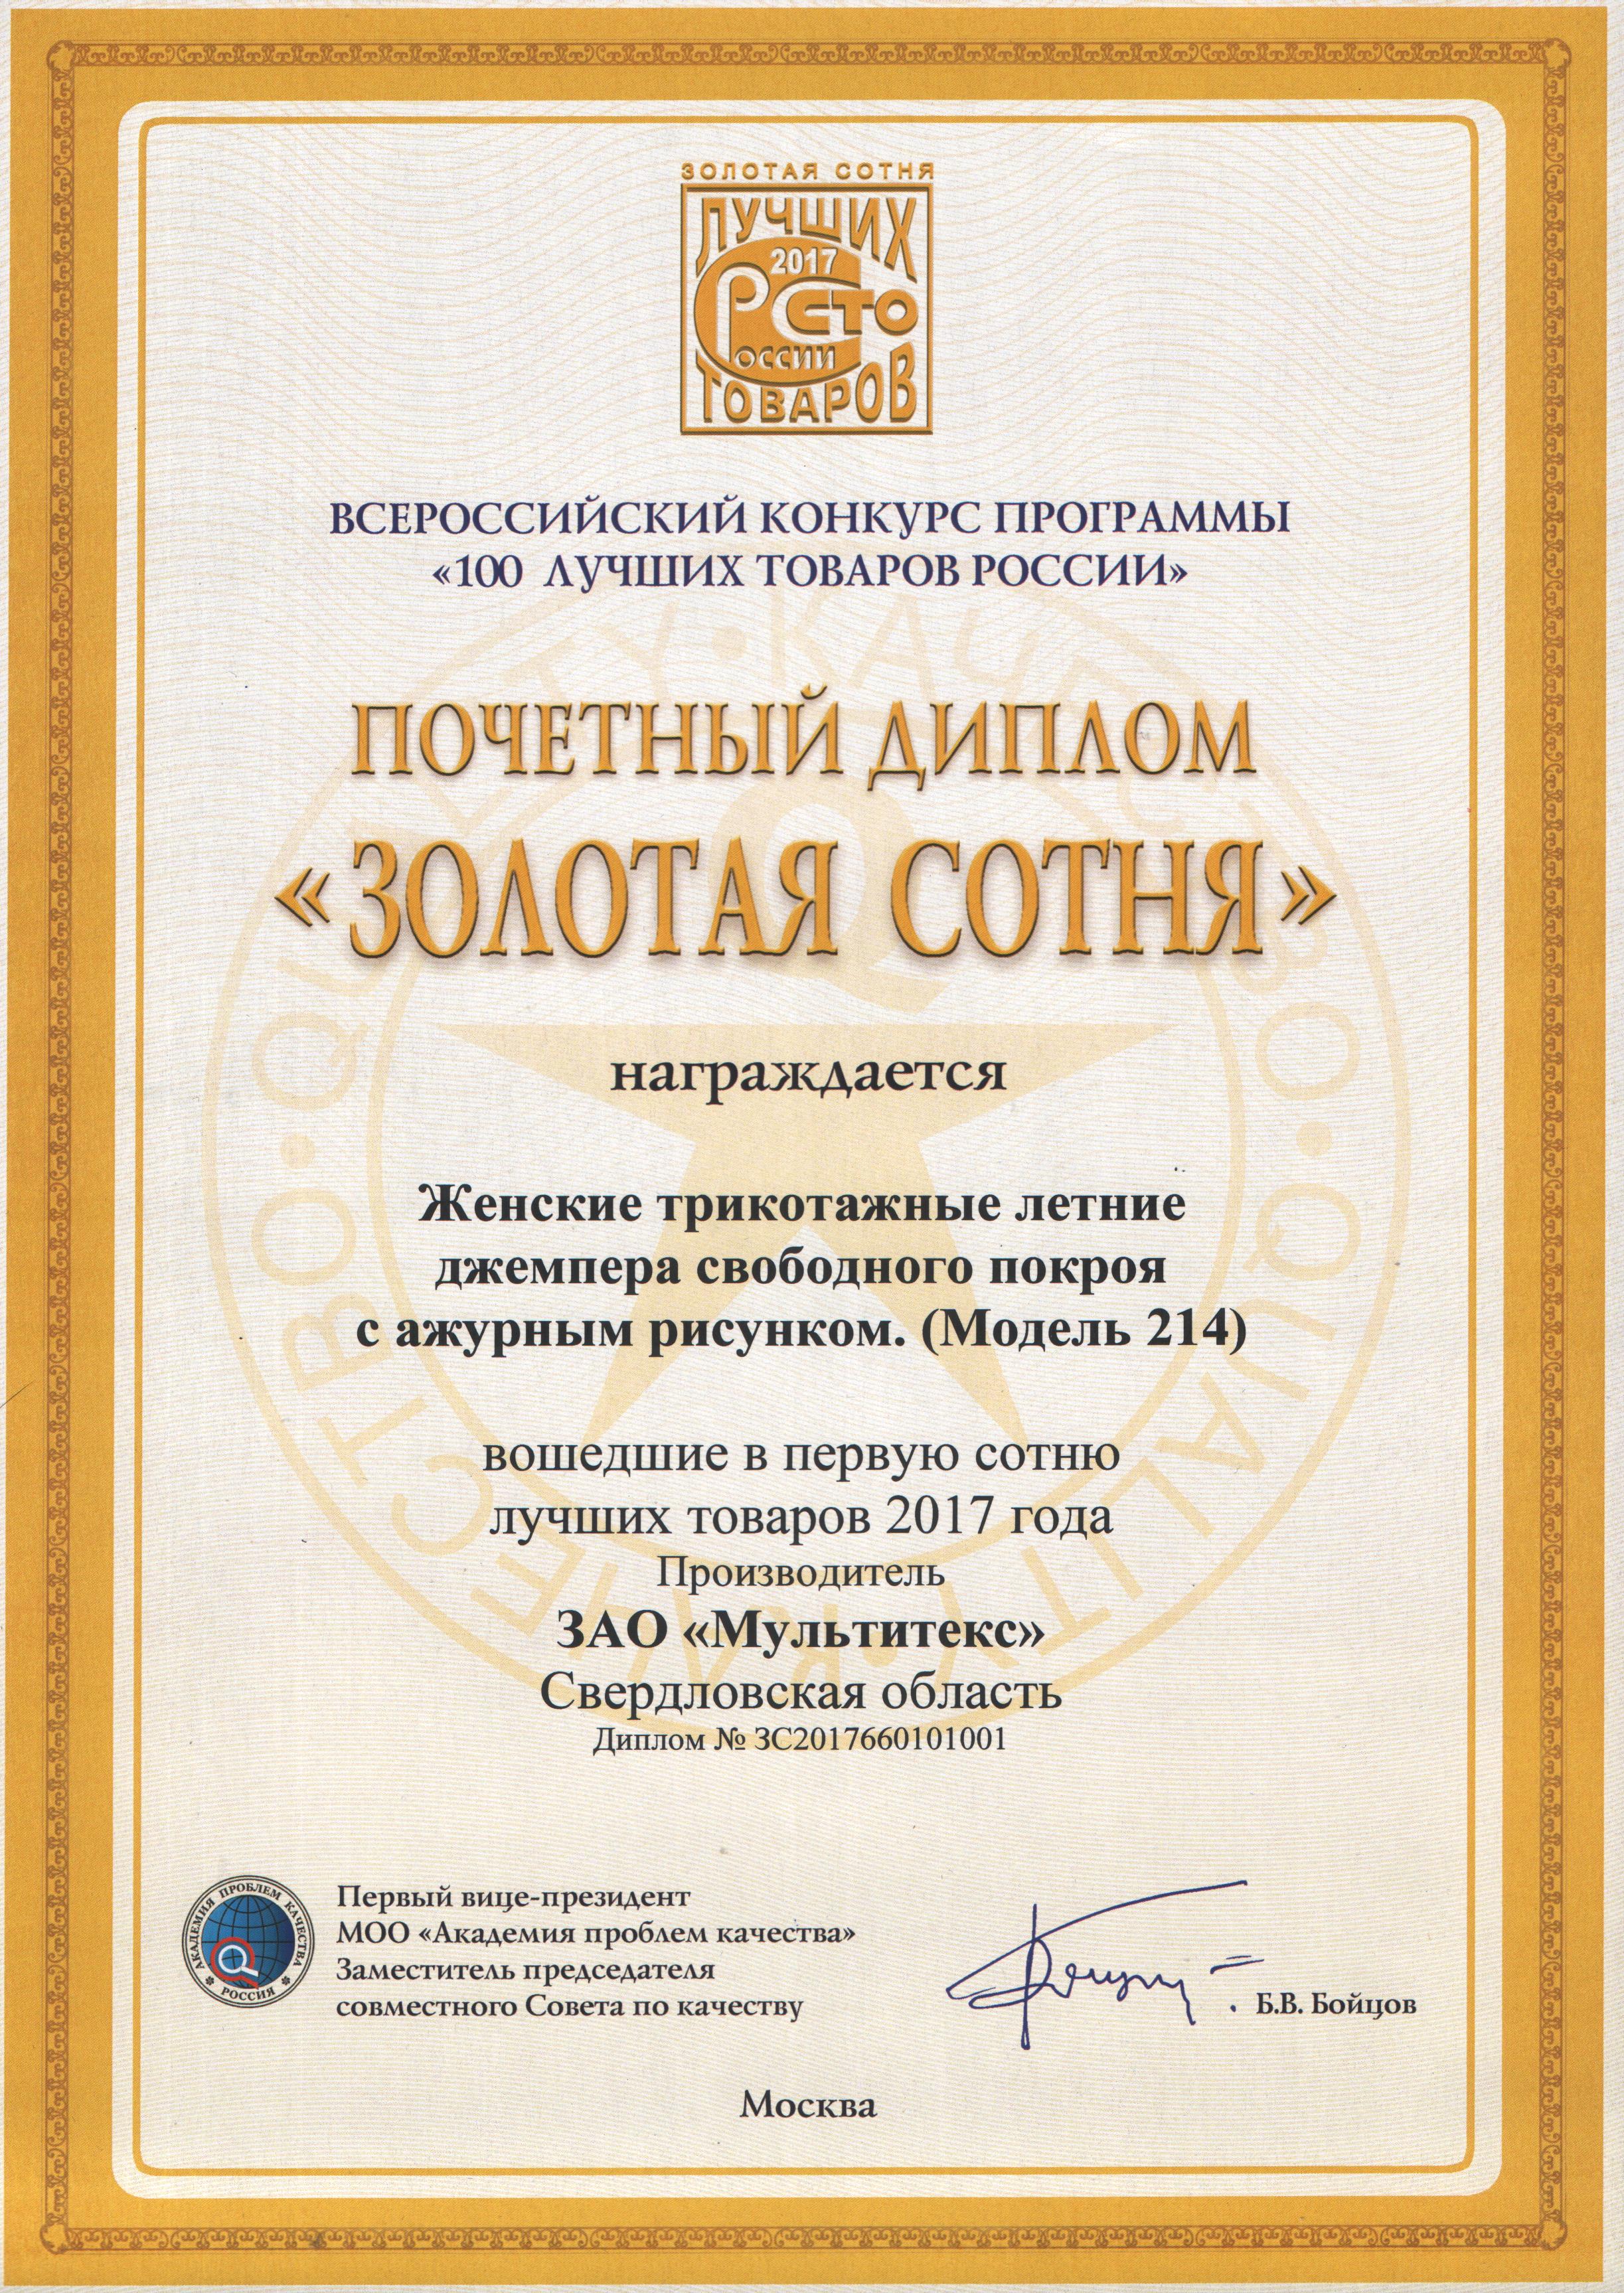 Почетный диплом "Золотая сотня"